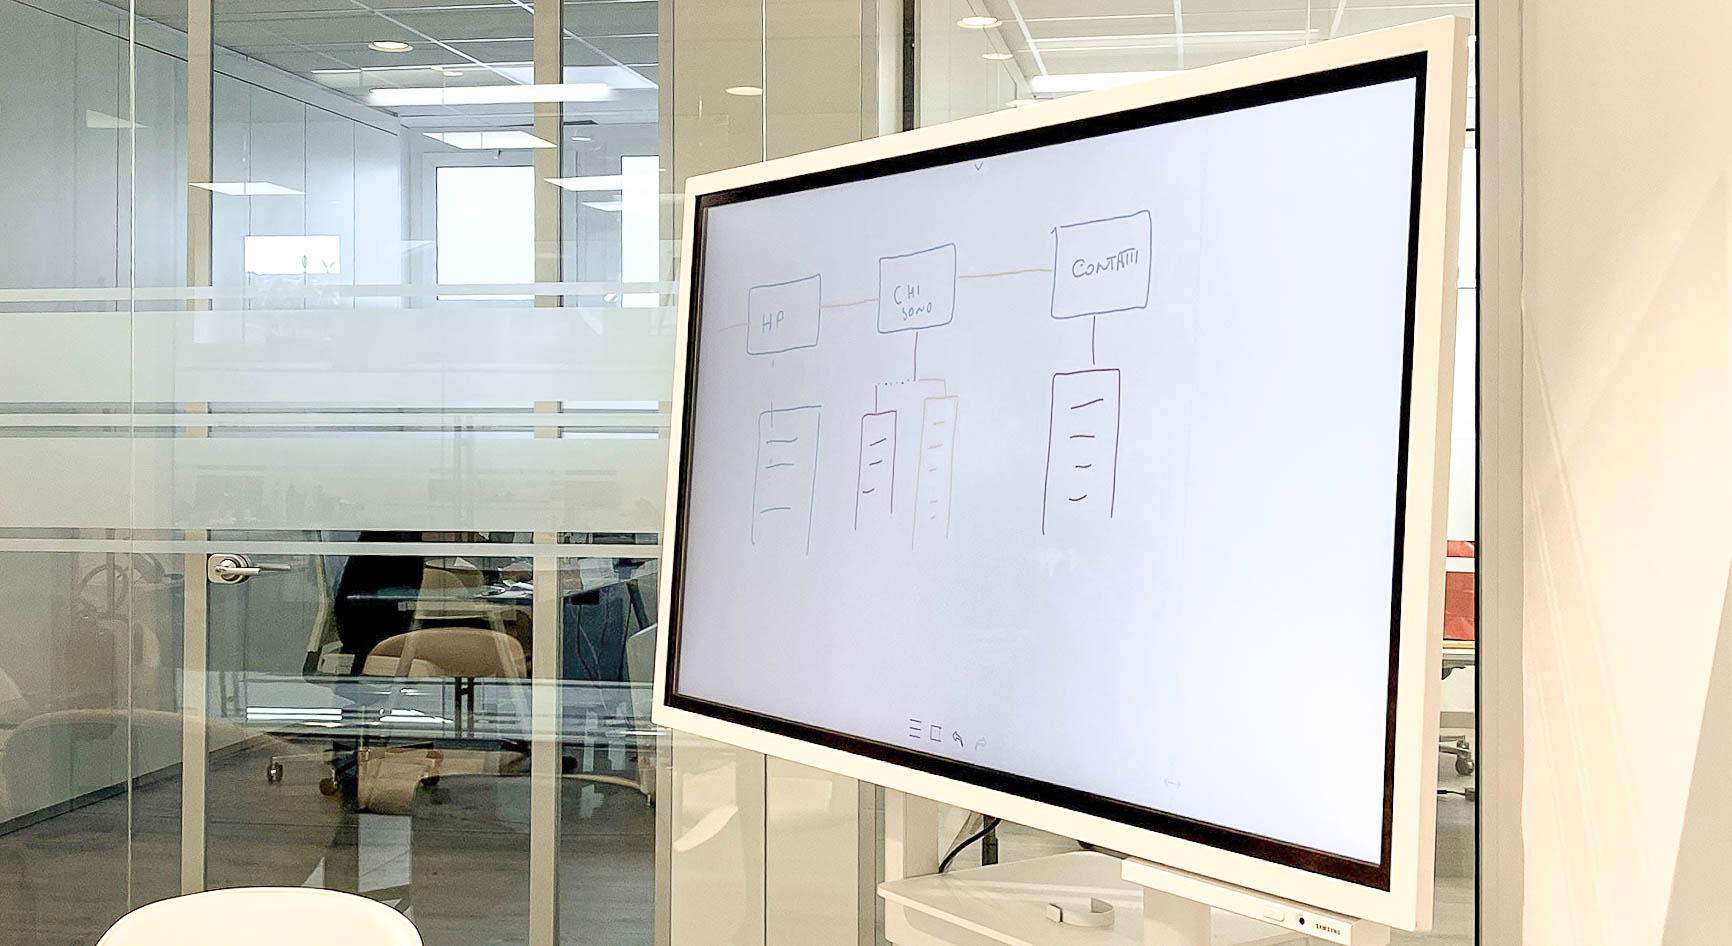 Lavagna interattiva IWB Samsung Flip da 55 pollici su stand mobile e orientabile posizionata in una sala riunioni